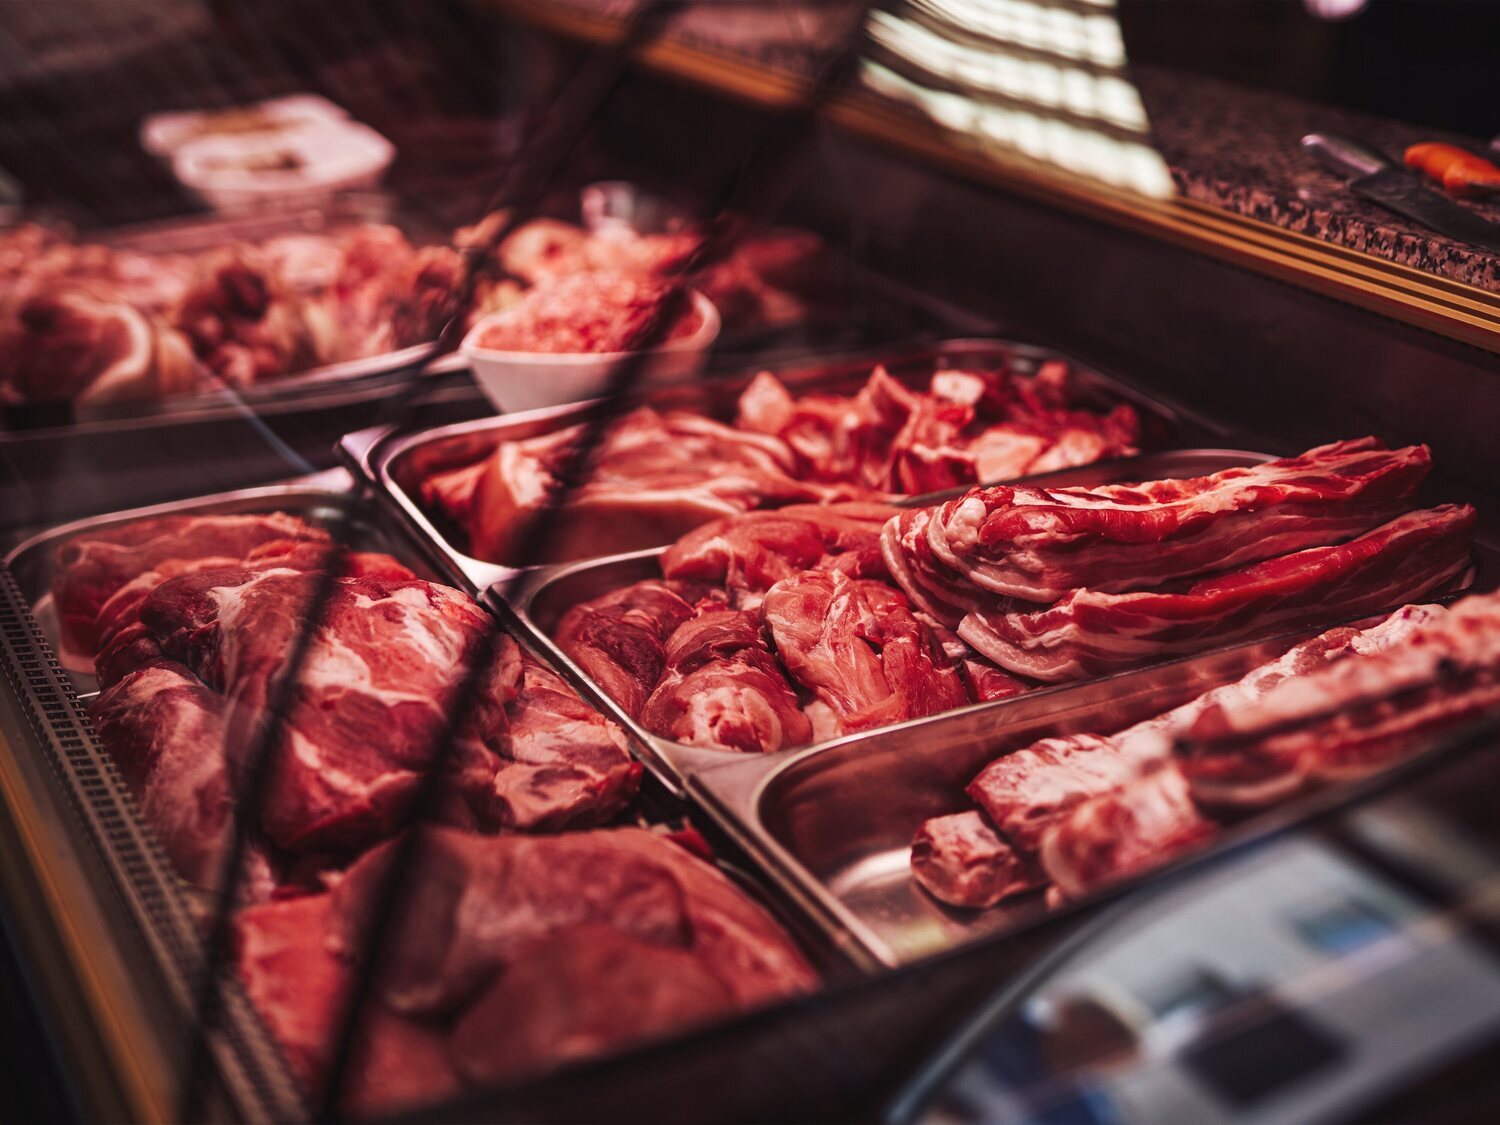 Los supermercados con menor frecuencia de venta en carnicería, según la OCU